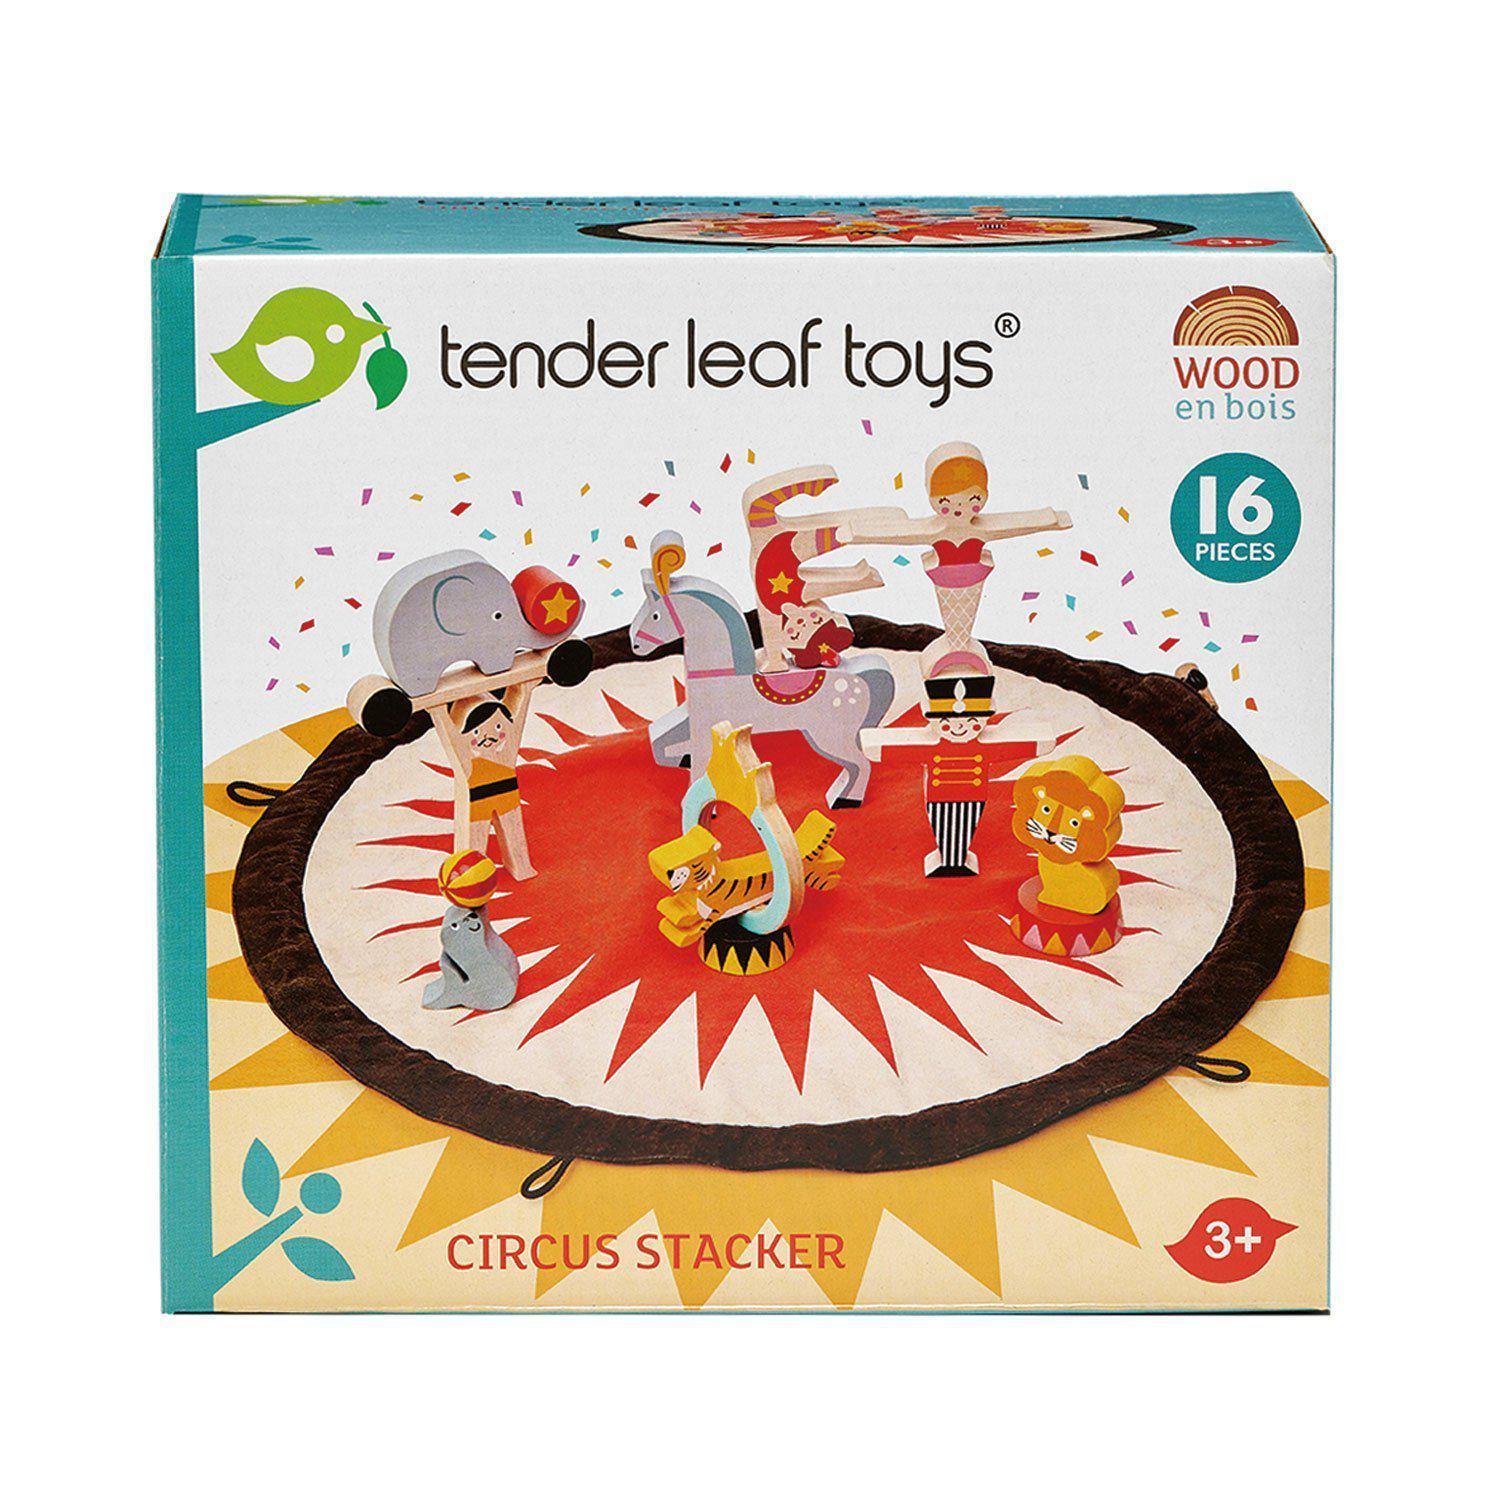 Cirkuszi mesés zsákocska, prémium minőségű fából - Circus Stacker - 16 darab, conține o planșă din material textil - Tender Leaf Toys-Tender Leaf Toys-1-Játszma.ro - A maradandó élmények boltja